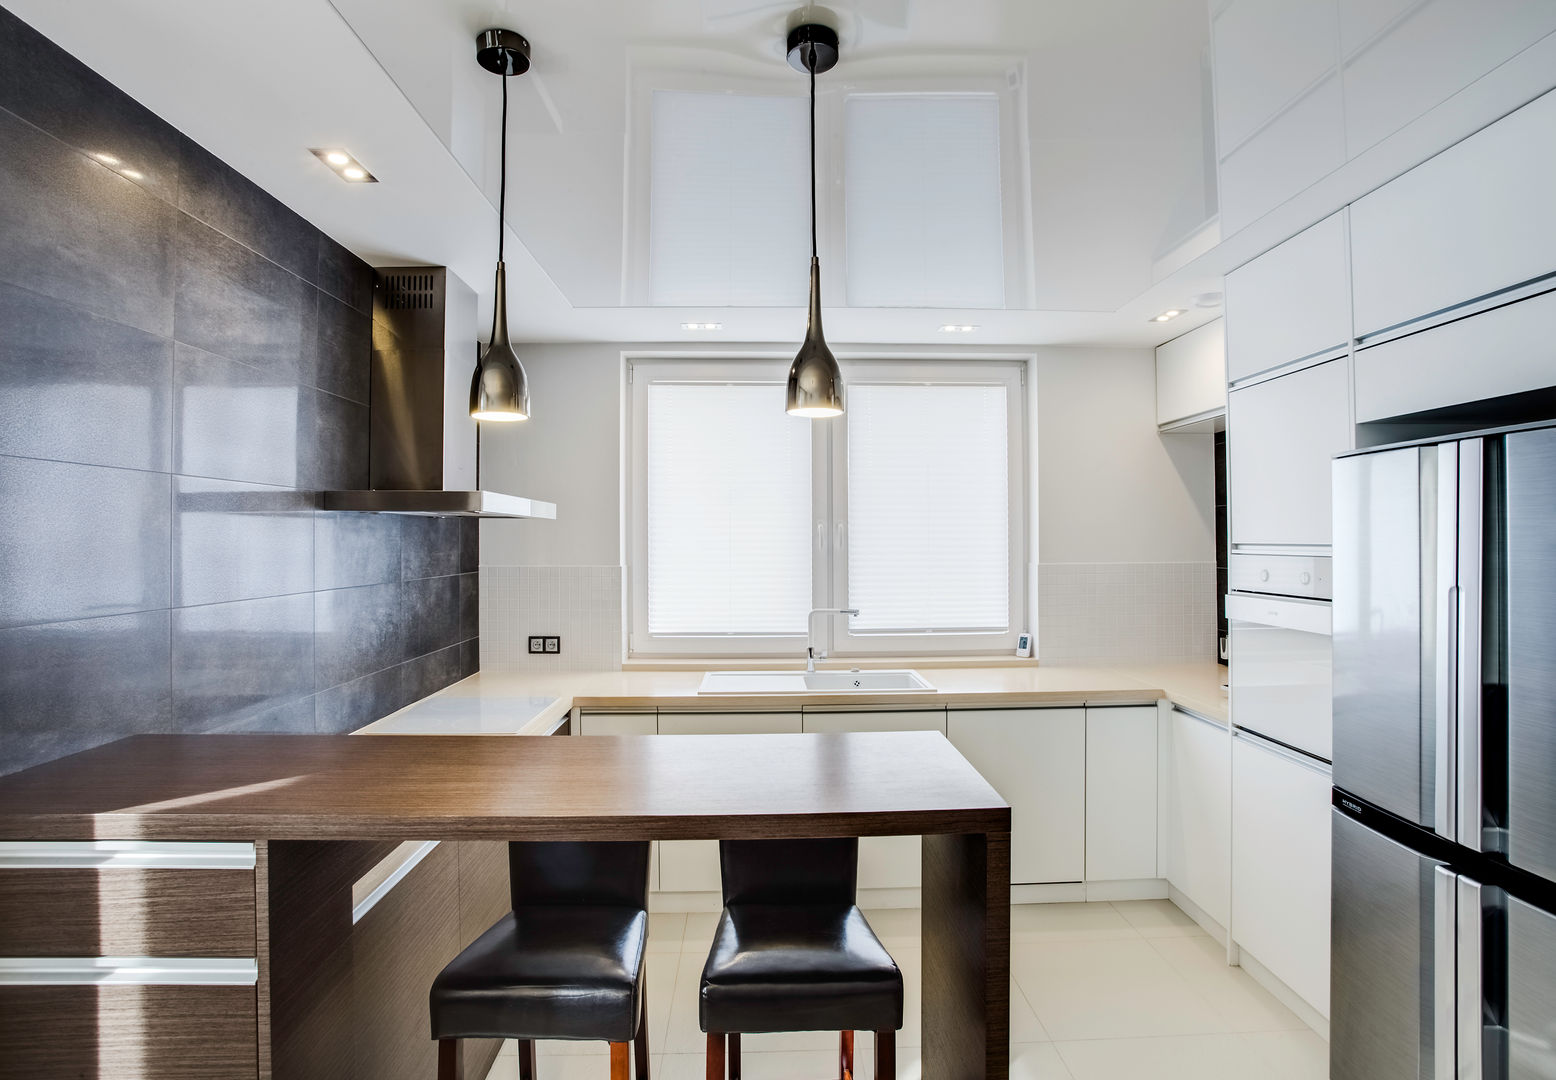 odcienie S Z A R O Ś C I, DK architektura wnętrz DK architektura wnętrz Modern kitchen